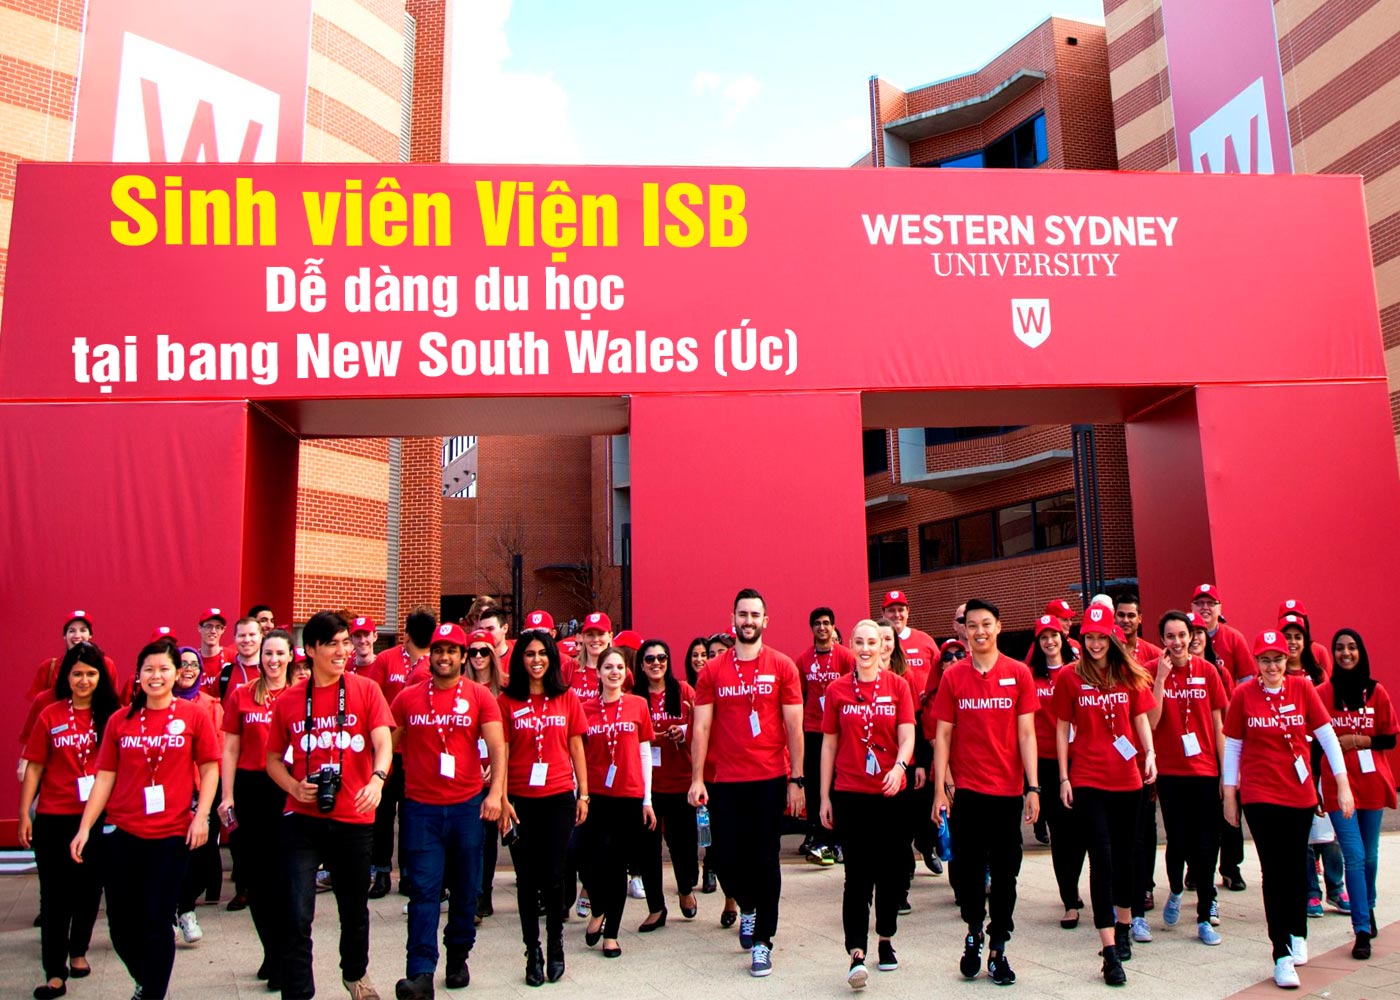 Sinh viên Viện ISB dễ dàng du học tại bang New South Wales (Úc) - Ảnh 1